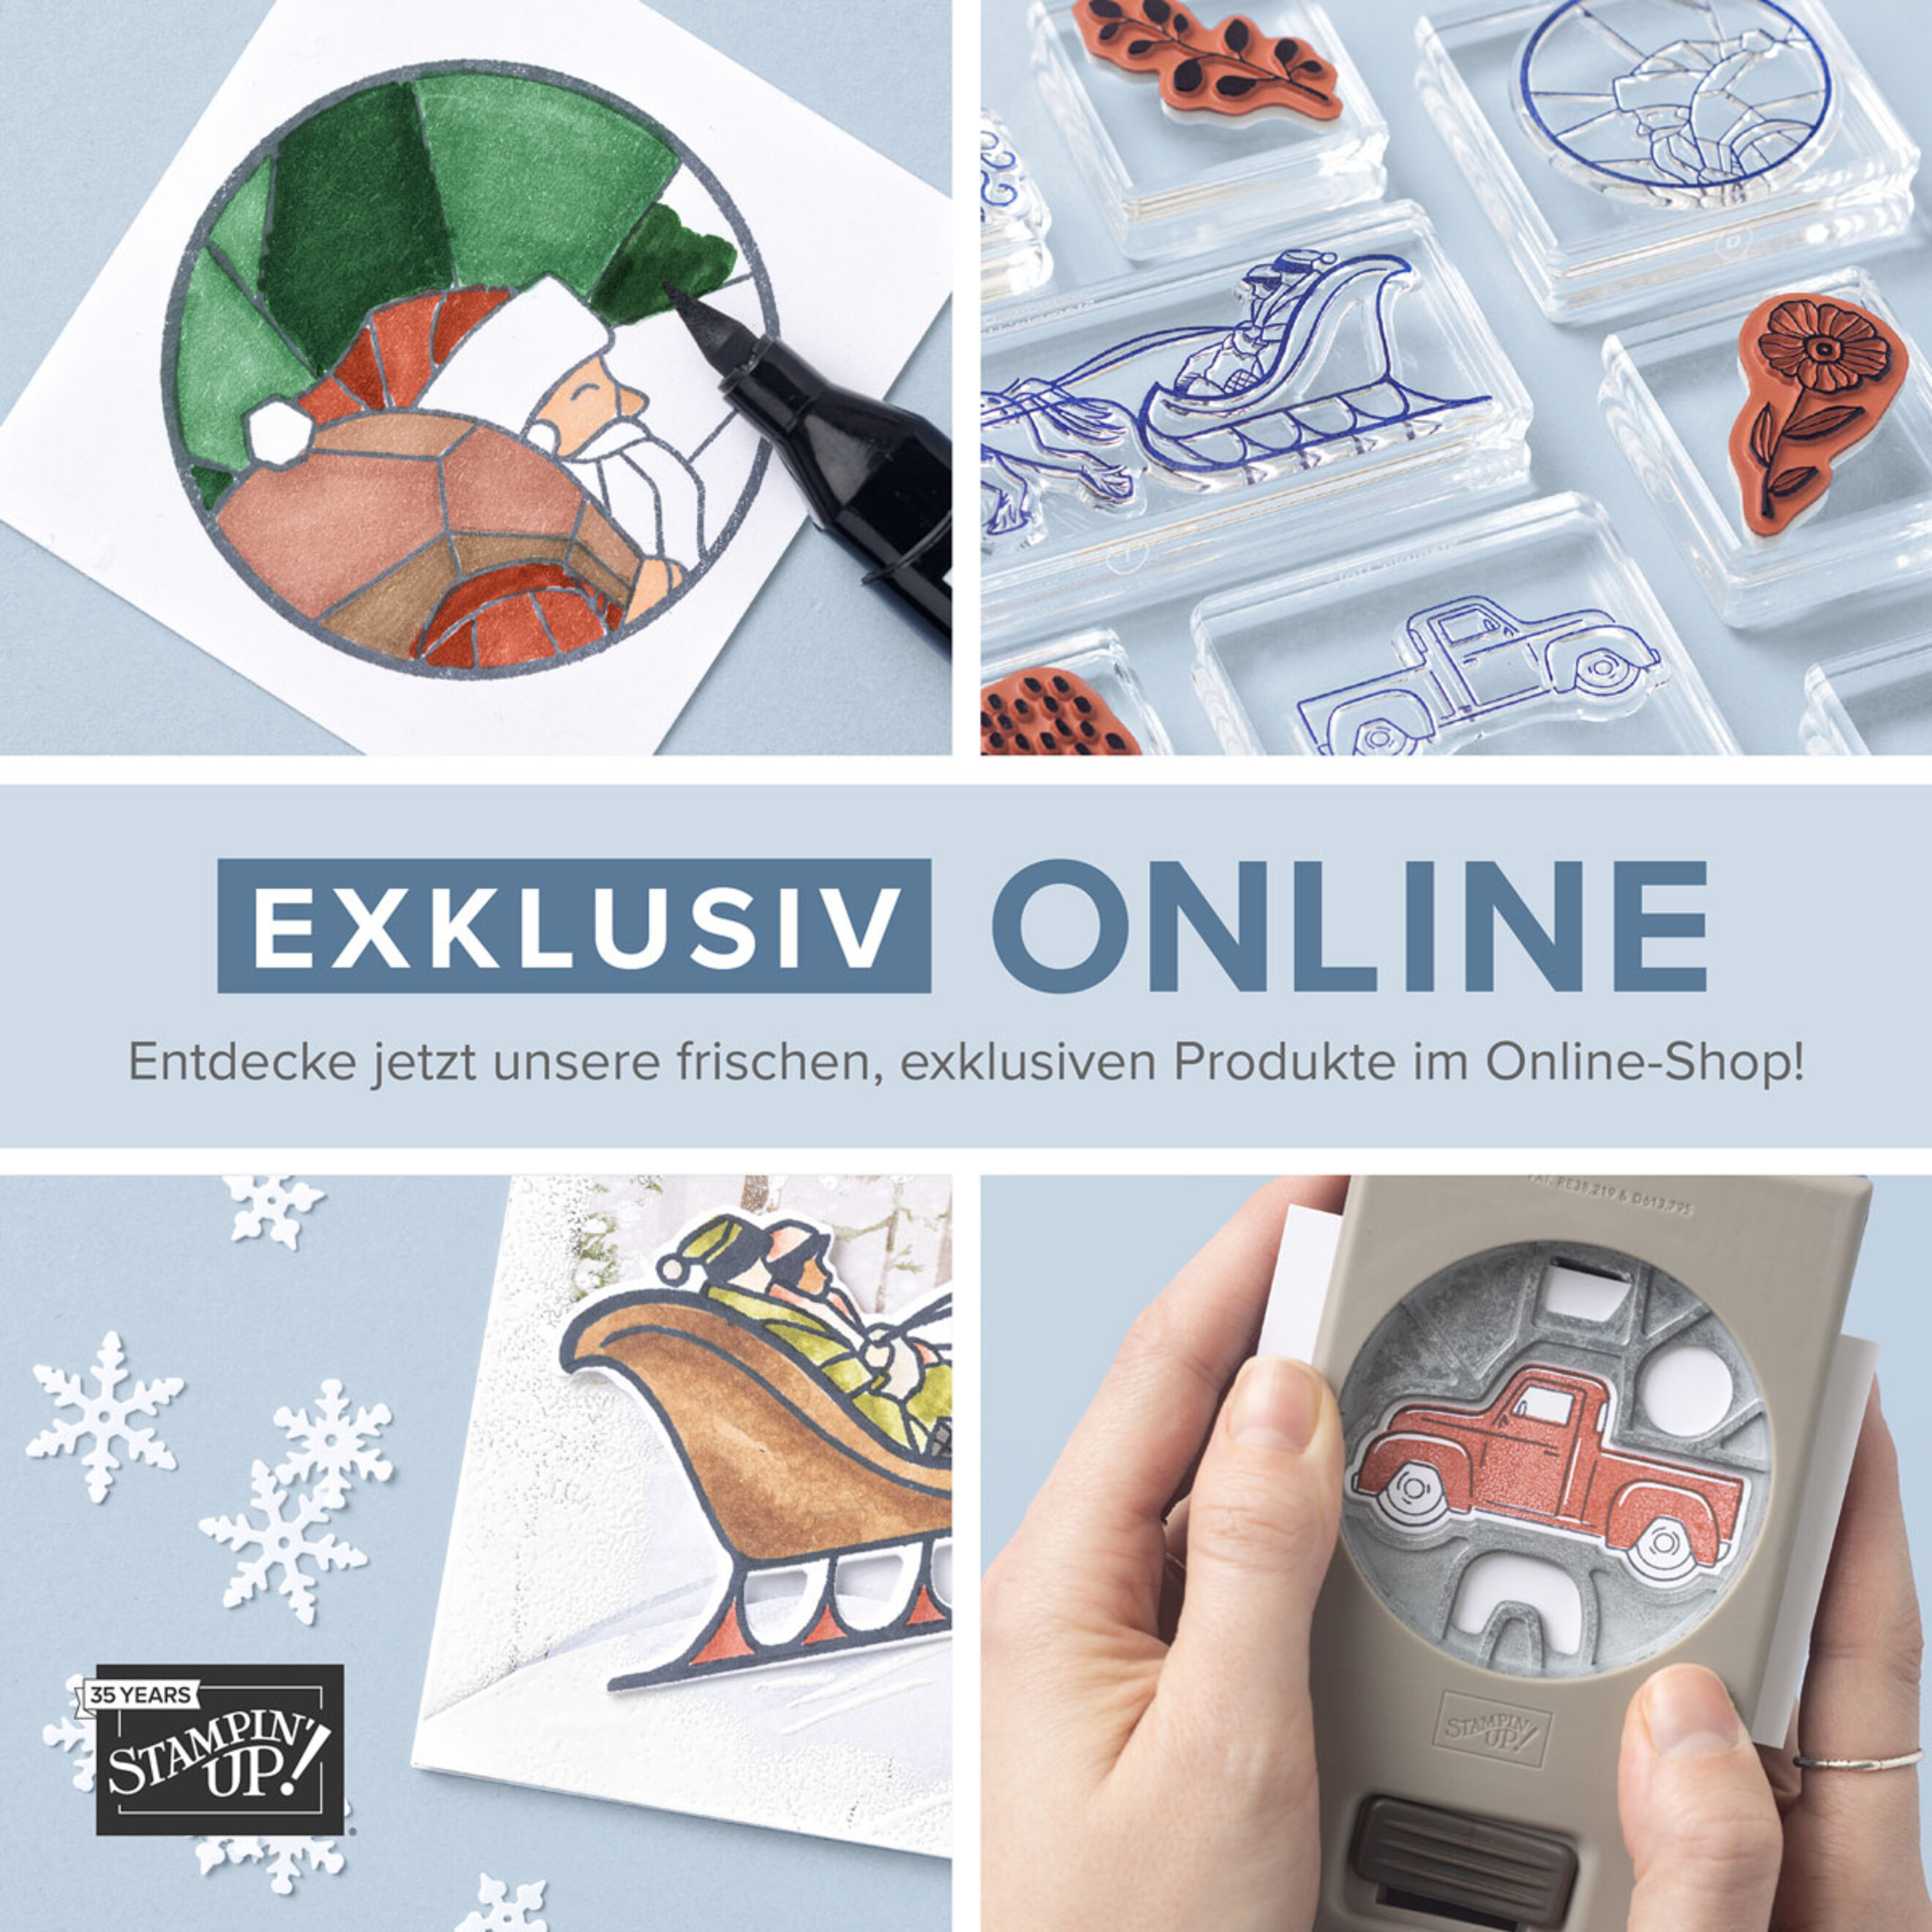 Exclusiv_Online_SQ